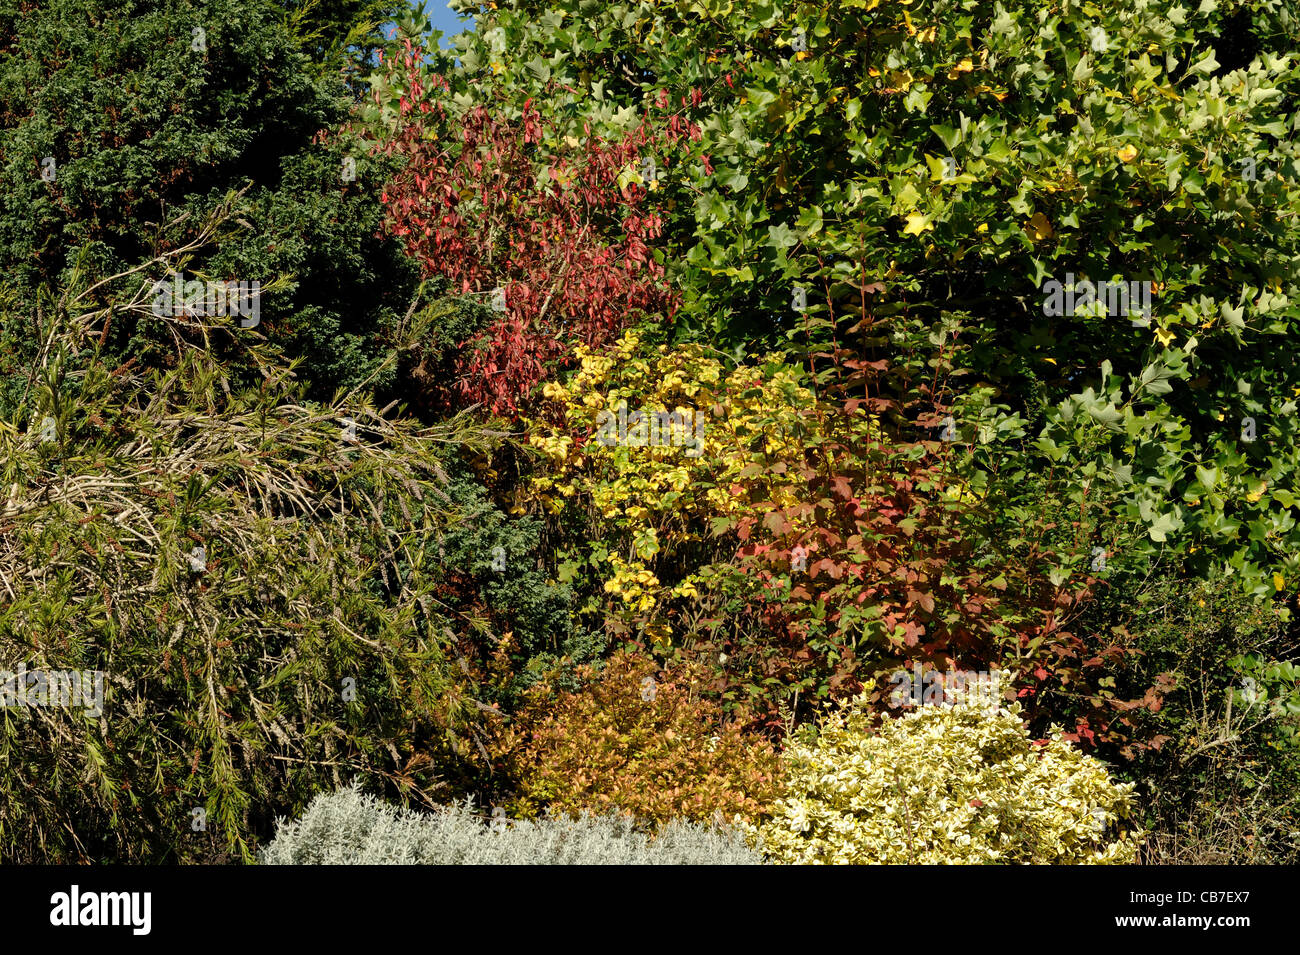 Devon a terrazze giardino di arbusti e alberi piccoli con una gamma di colori autunnali Foto Stock